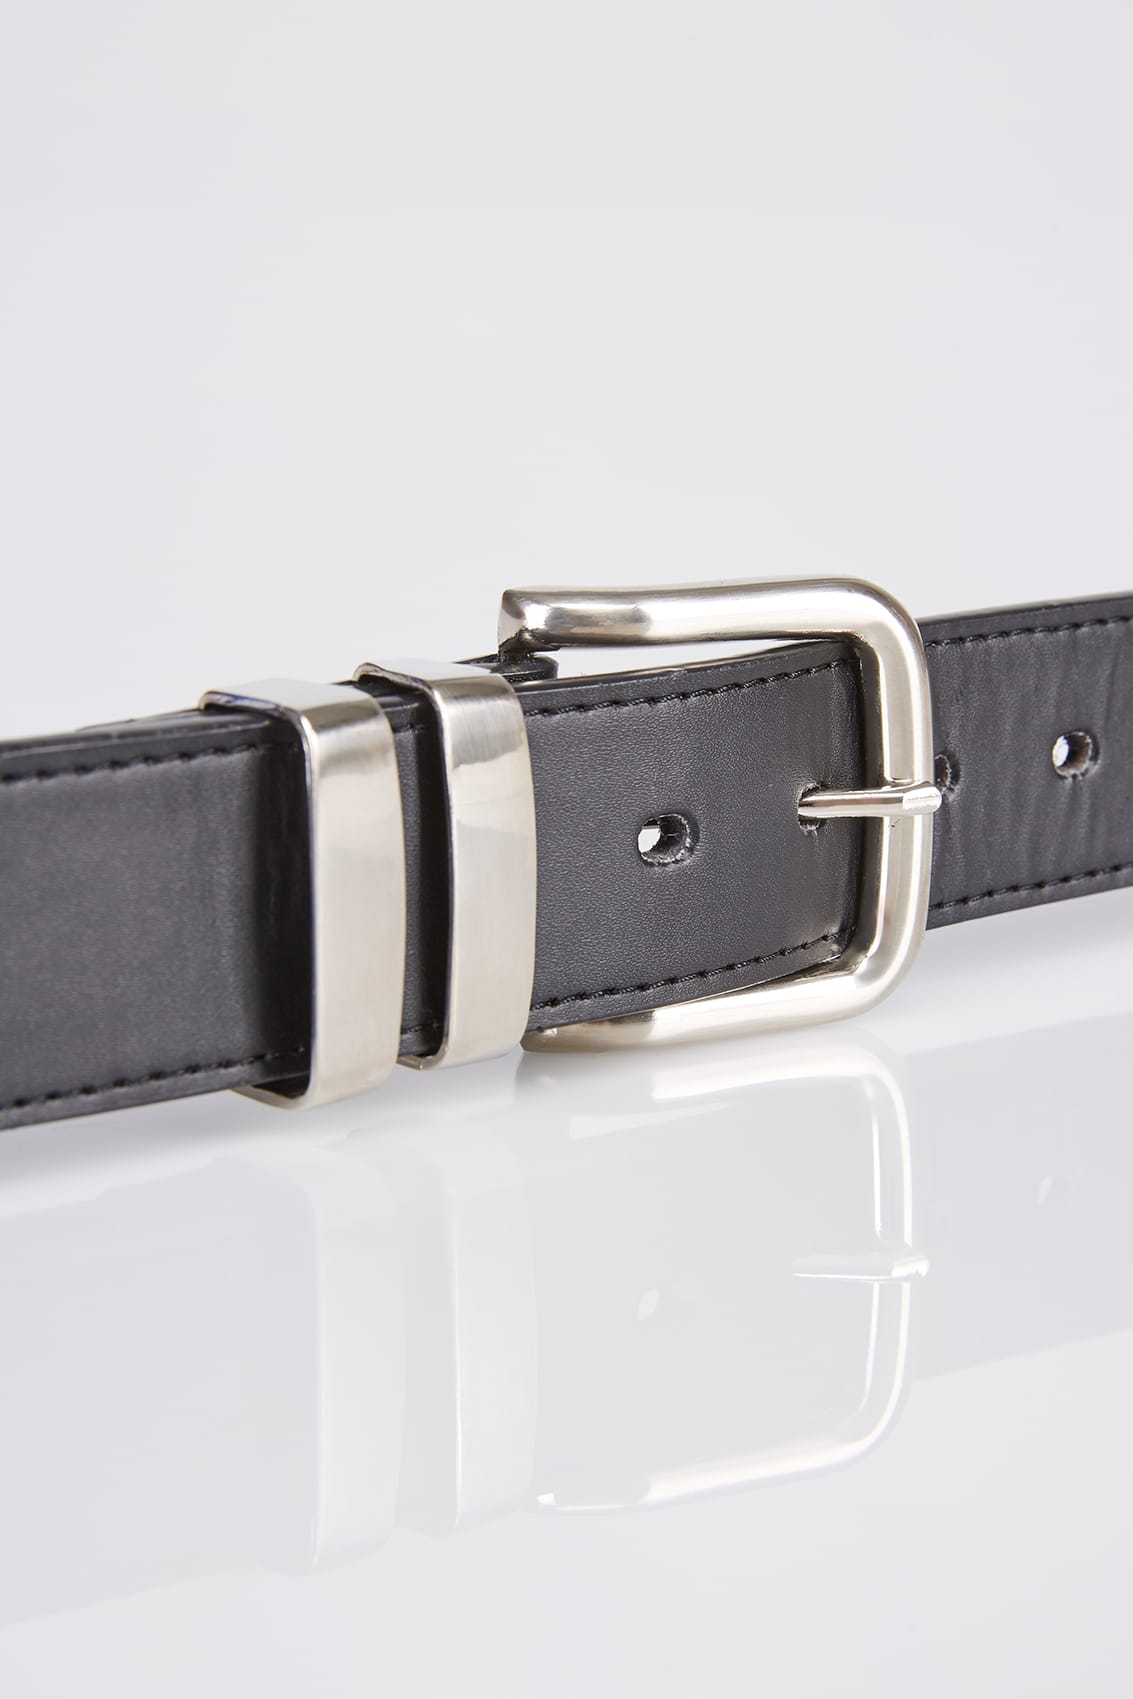 D555 Black Kingsize Leather Belt With Silver Buckle Sizes 2XL, 3XL, 4XL, 5XL, 6XL, 7XL